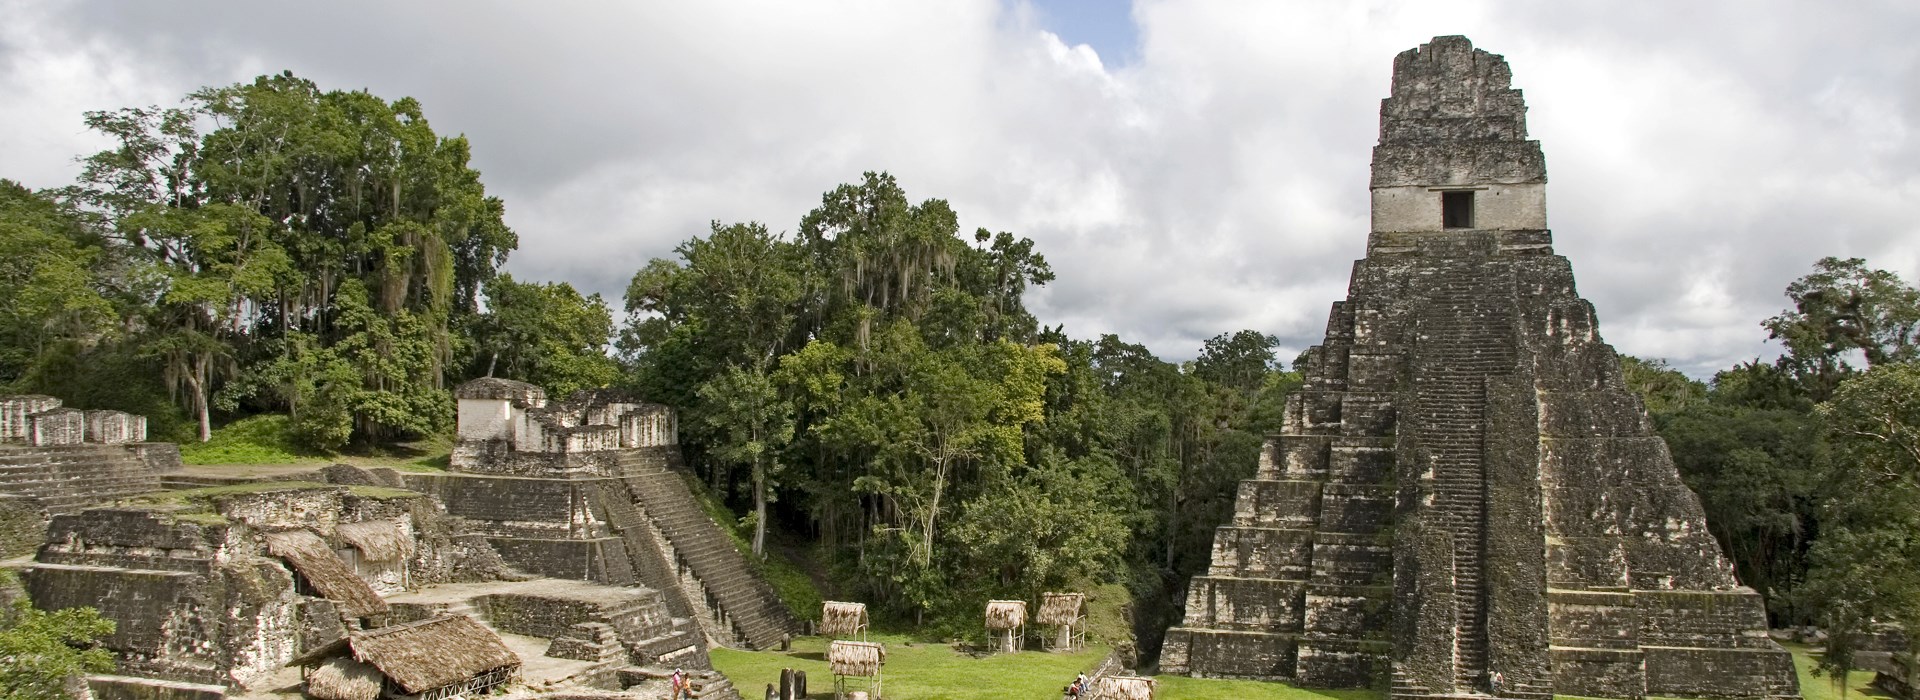 Visiter Les temples Tikal - Guatemala